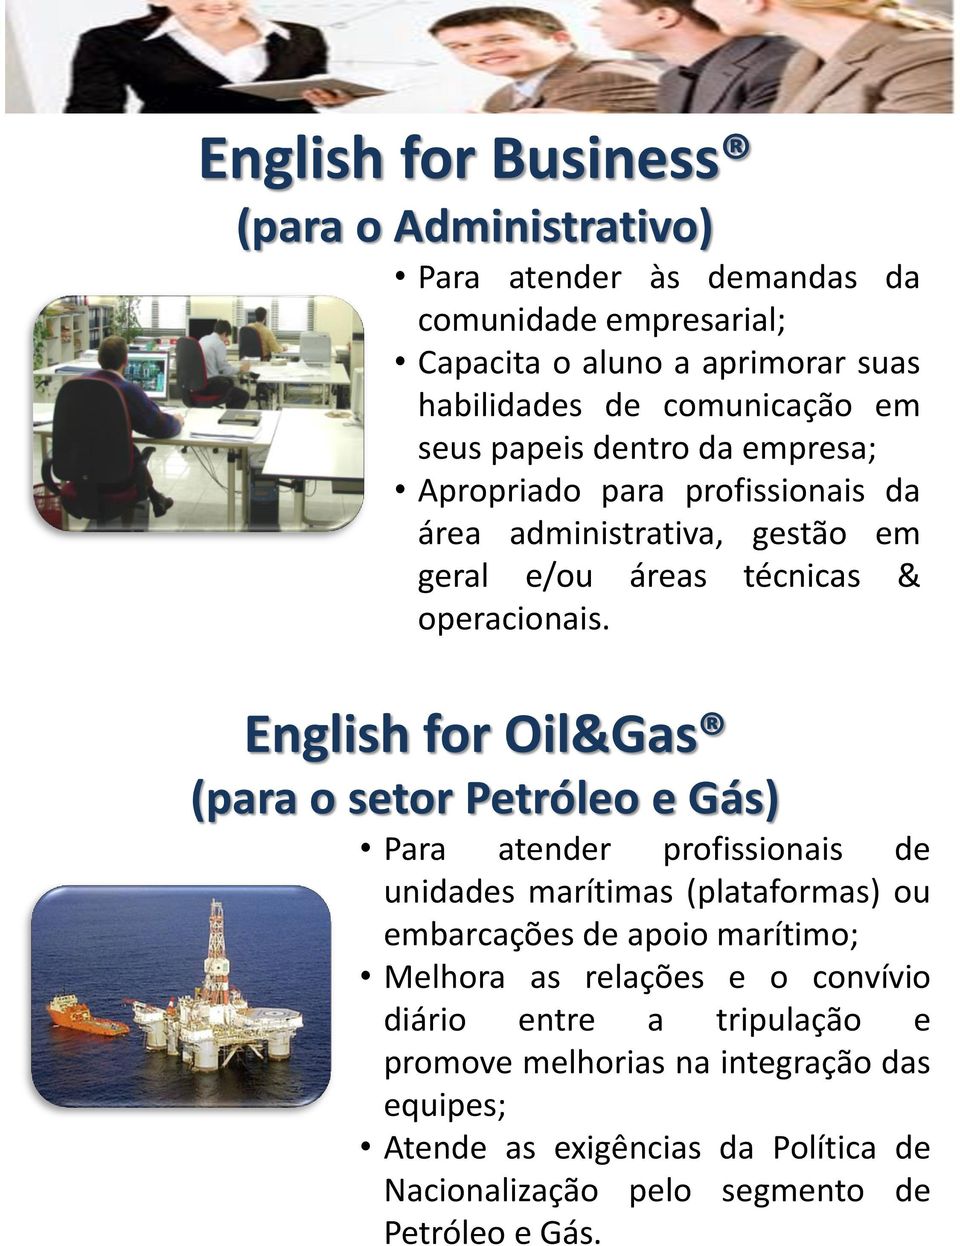 English for Oil&Gas (para o setor Petróleo e Gás) Para atender profissionais de unidades marítimas (plataformas) ou embarcações de apoio marítimo; Melhora as